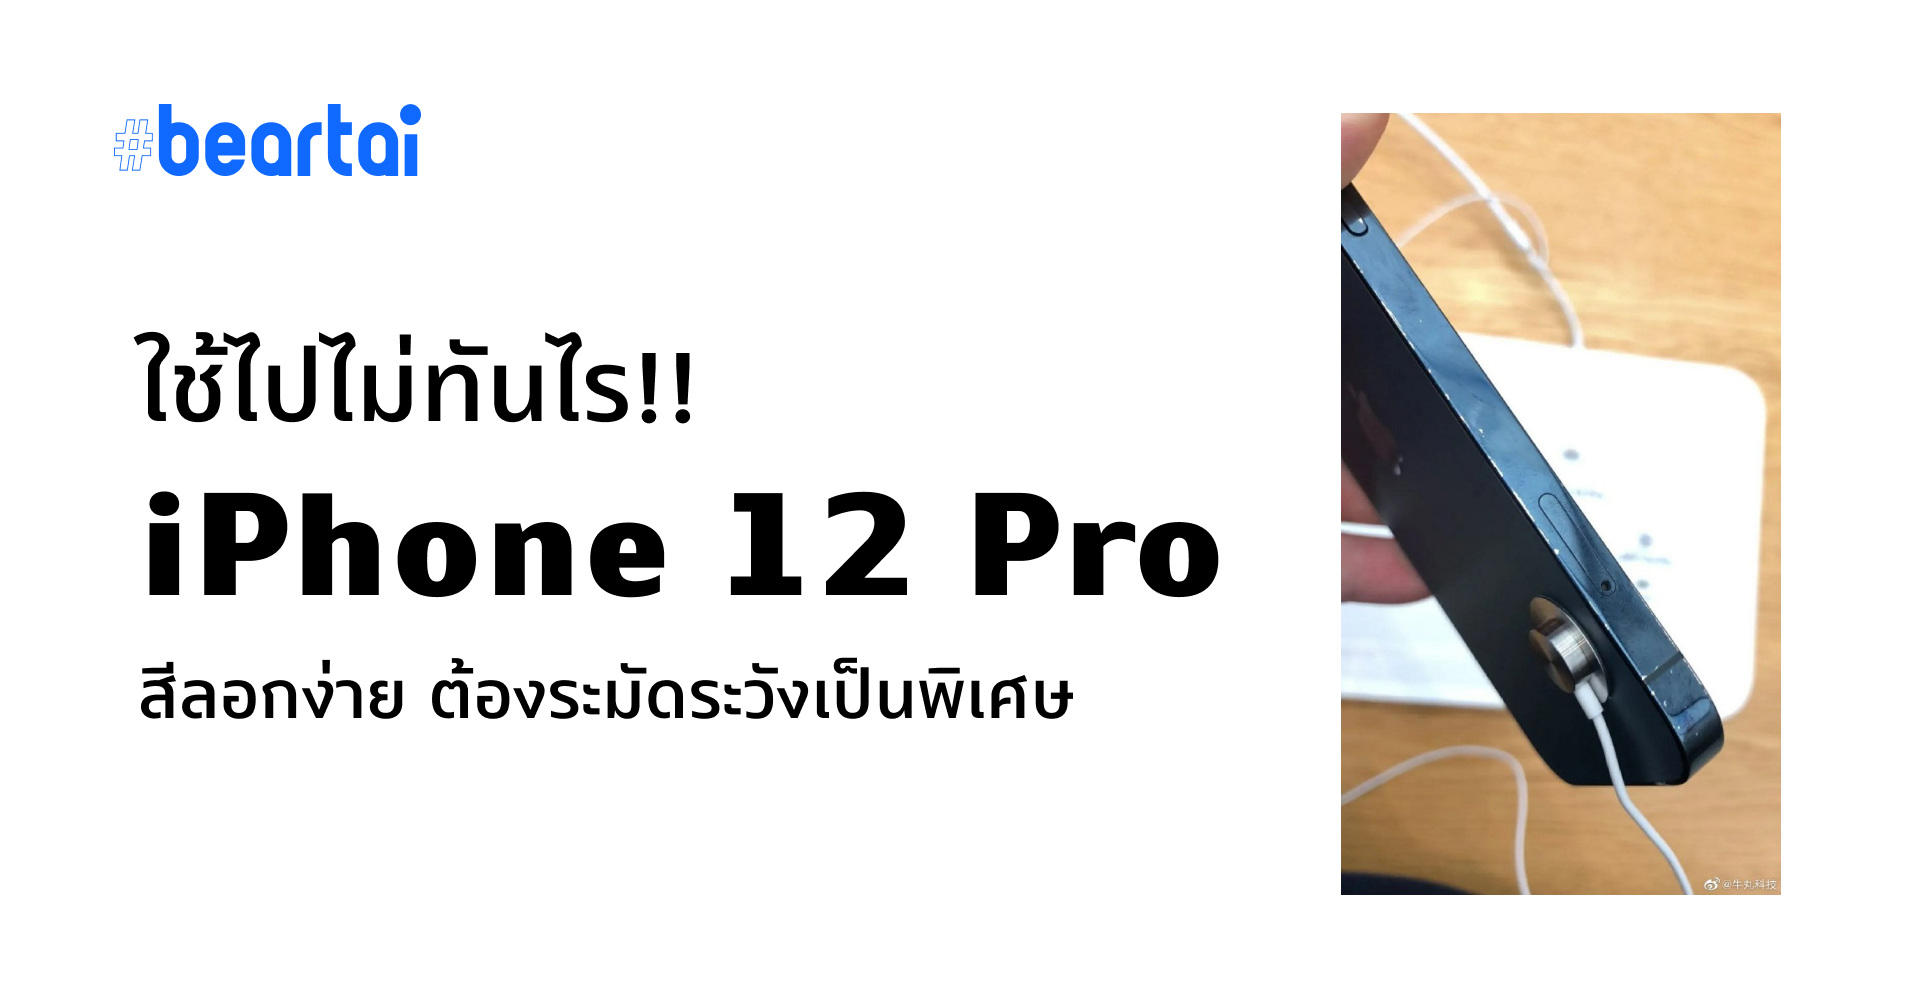 ไม่รอด!! พบ iPhone 12 Pro ใน Apple Store สีขอบลอก หลังวางขายไม่กี่วัน